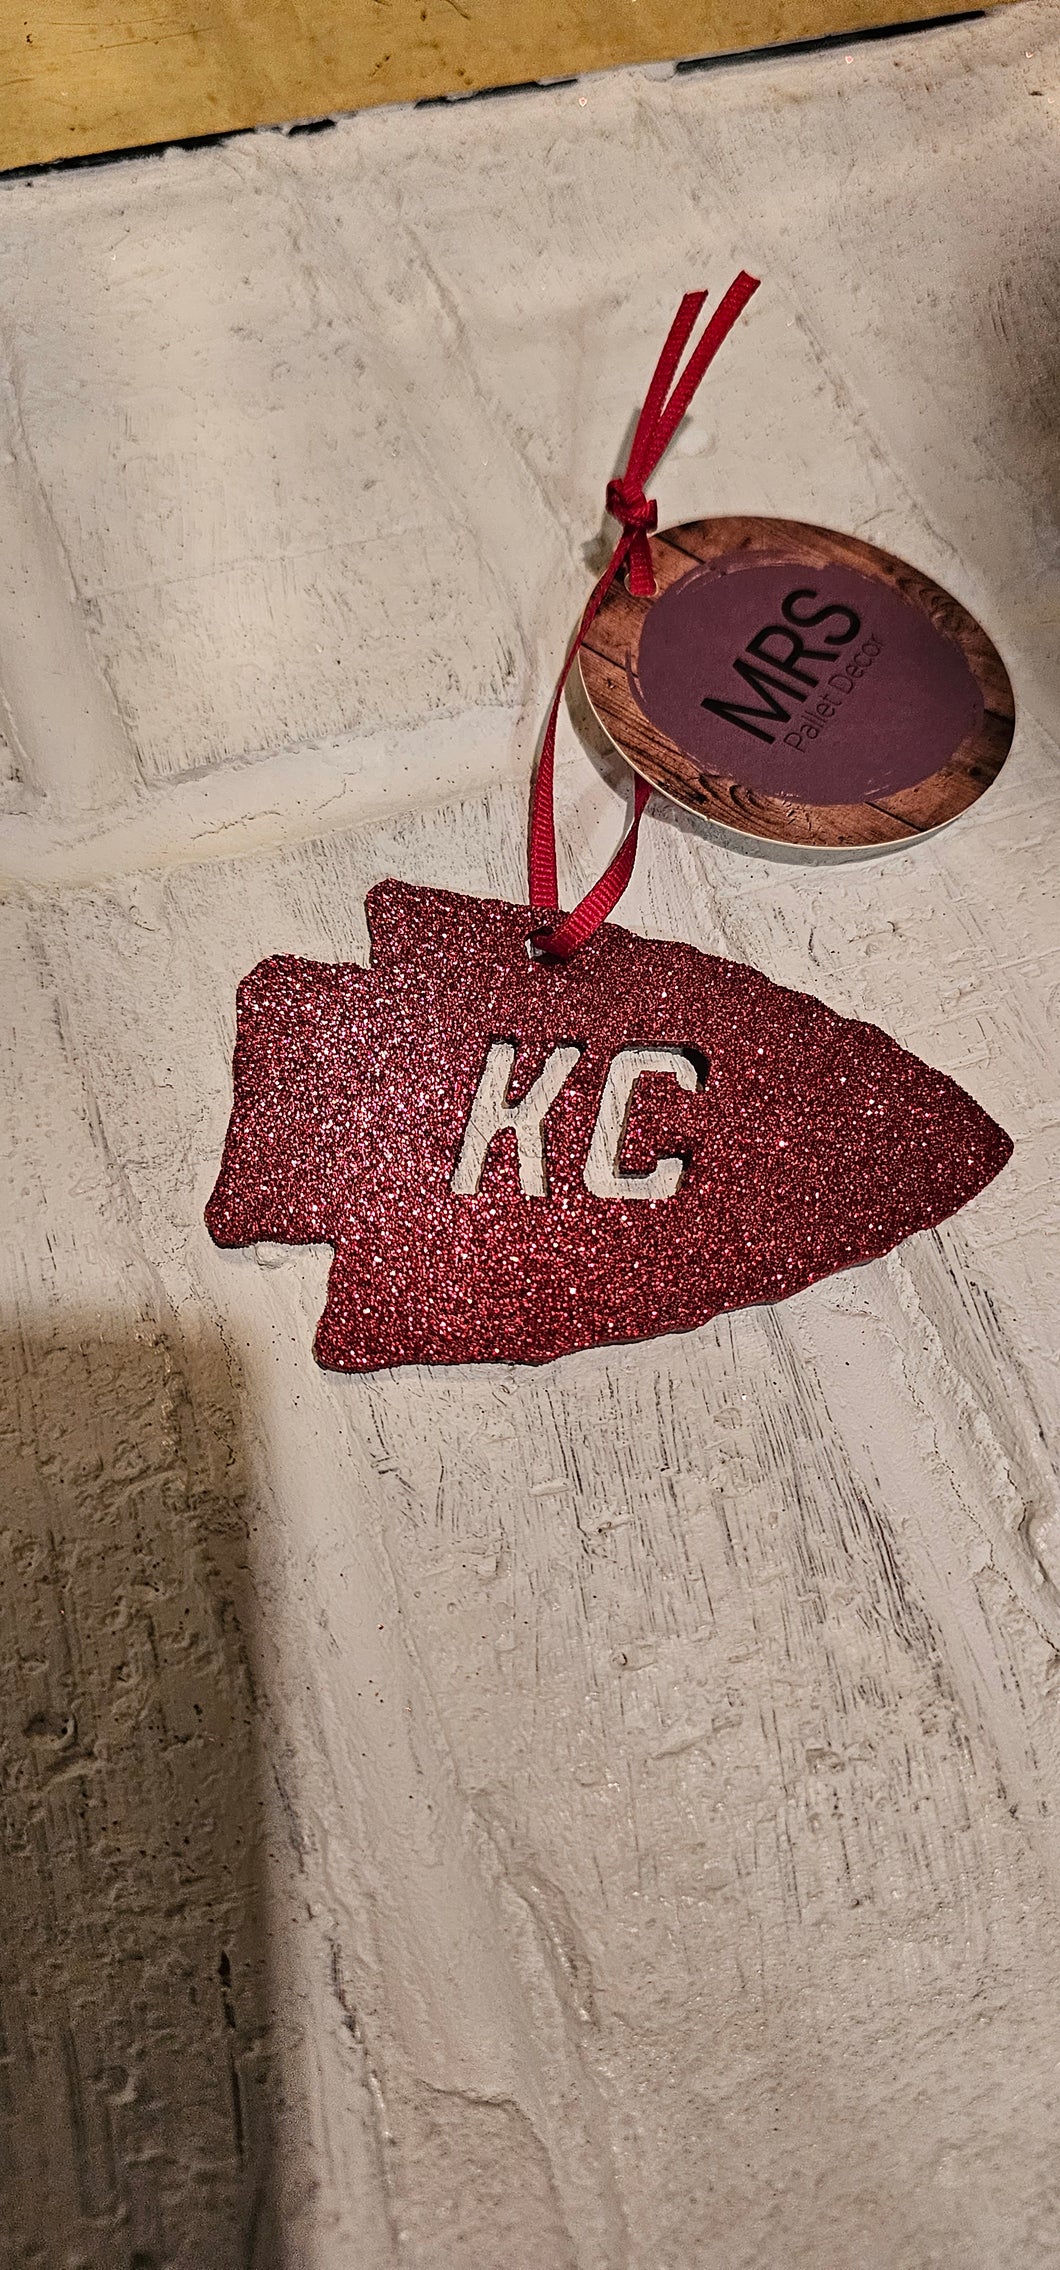 KC arrowhead shaped ornament